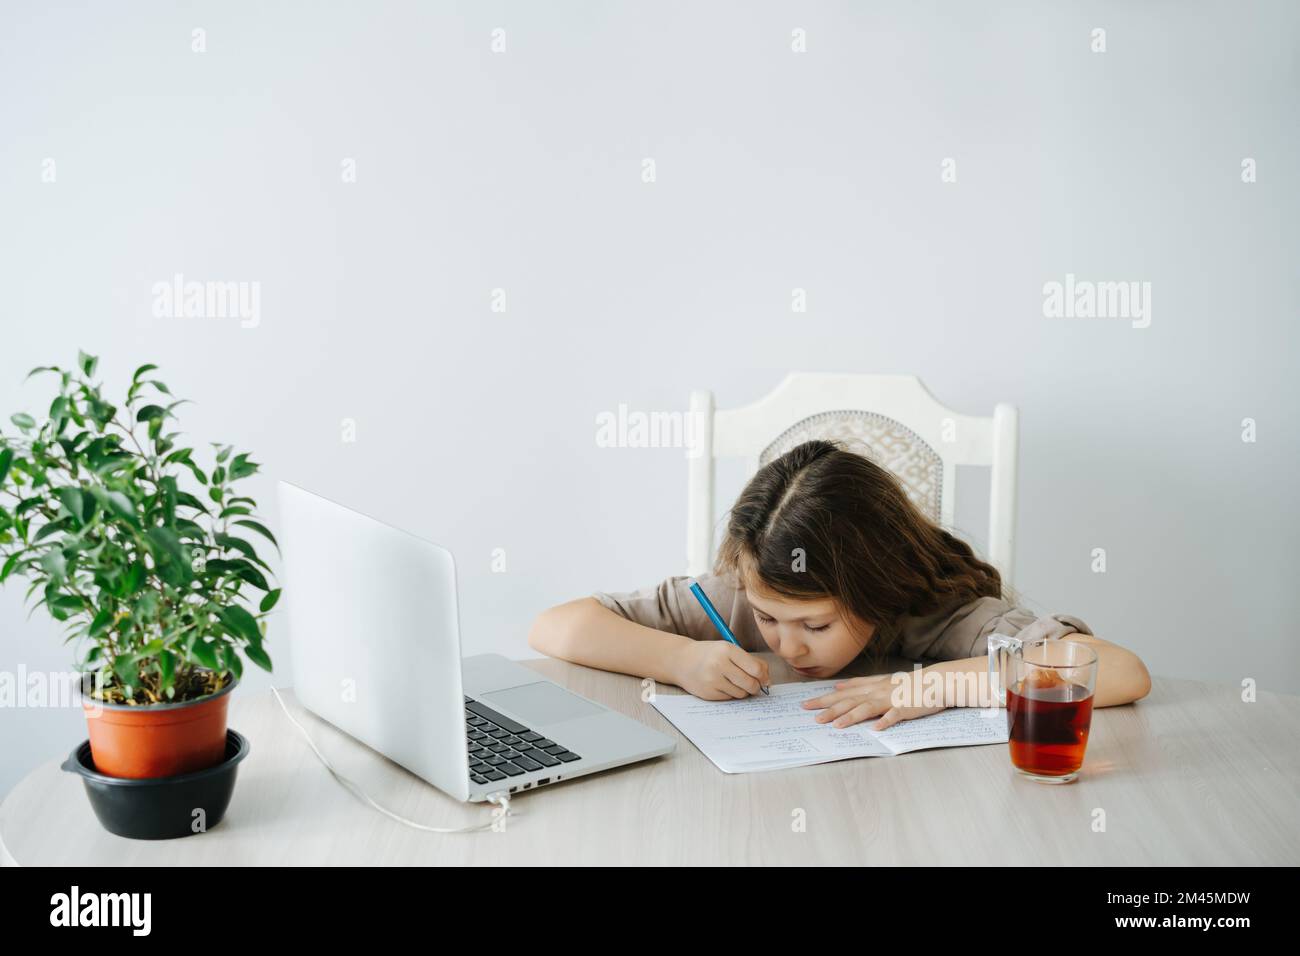 La bambina messa a fuoco sta studiando davanti a un laptop, scrivendo in un taccuino, guardandolo punto in bianco. Tazza da tè e pianta in vaso su un tavolo. Foto Stock